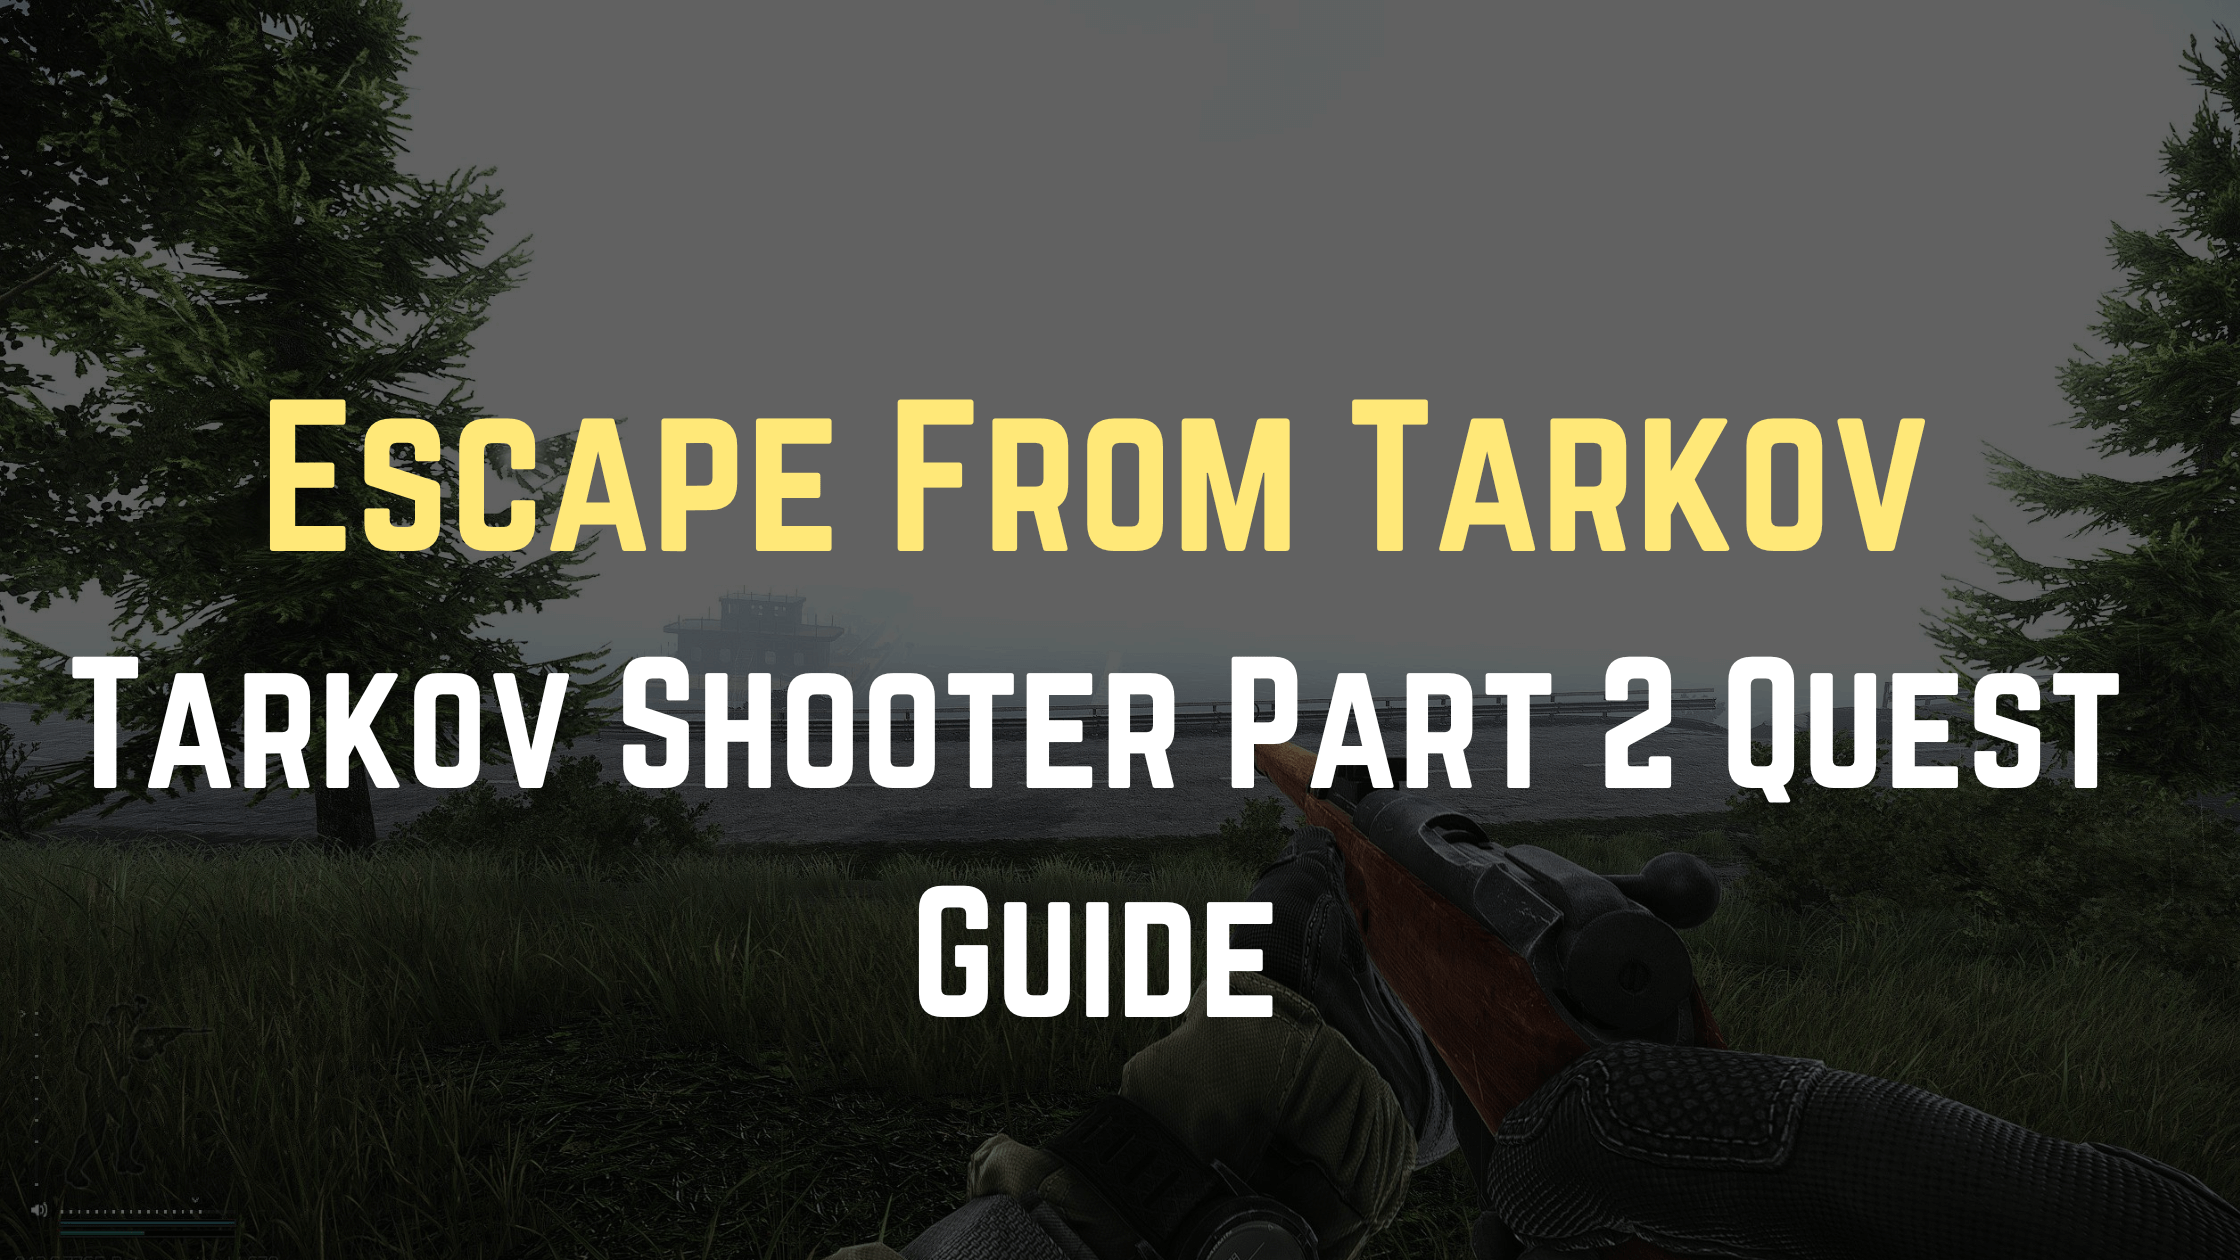 Tarkov Shooter Part 2